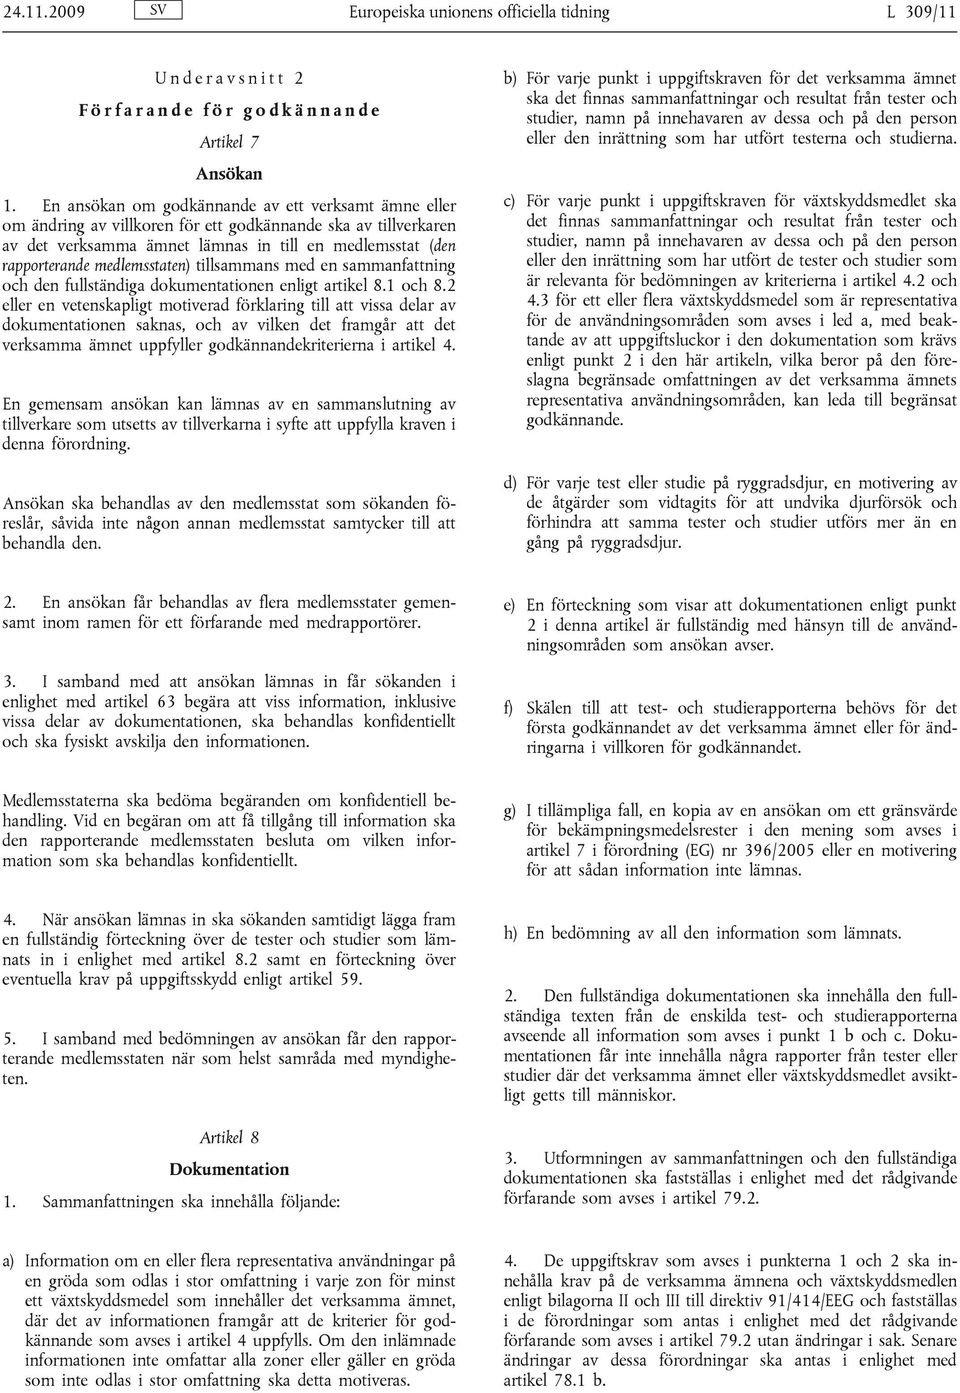 medlemsstaten) tillsammans med en sammanfattning och den fullständiga dokumentationen enligt artikel 8.1 och 8.